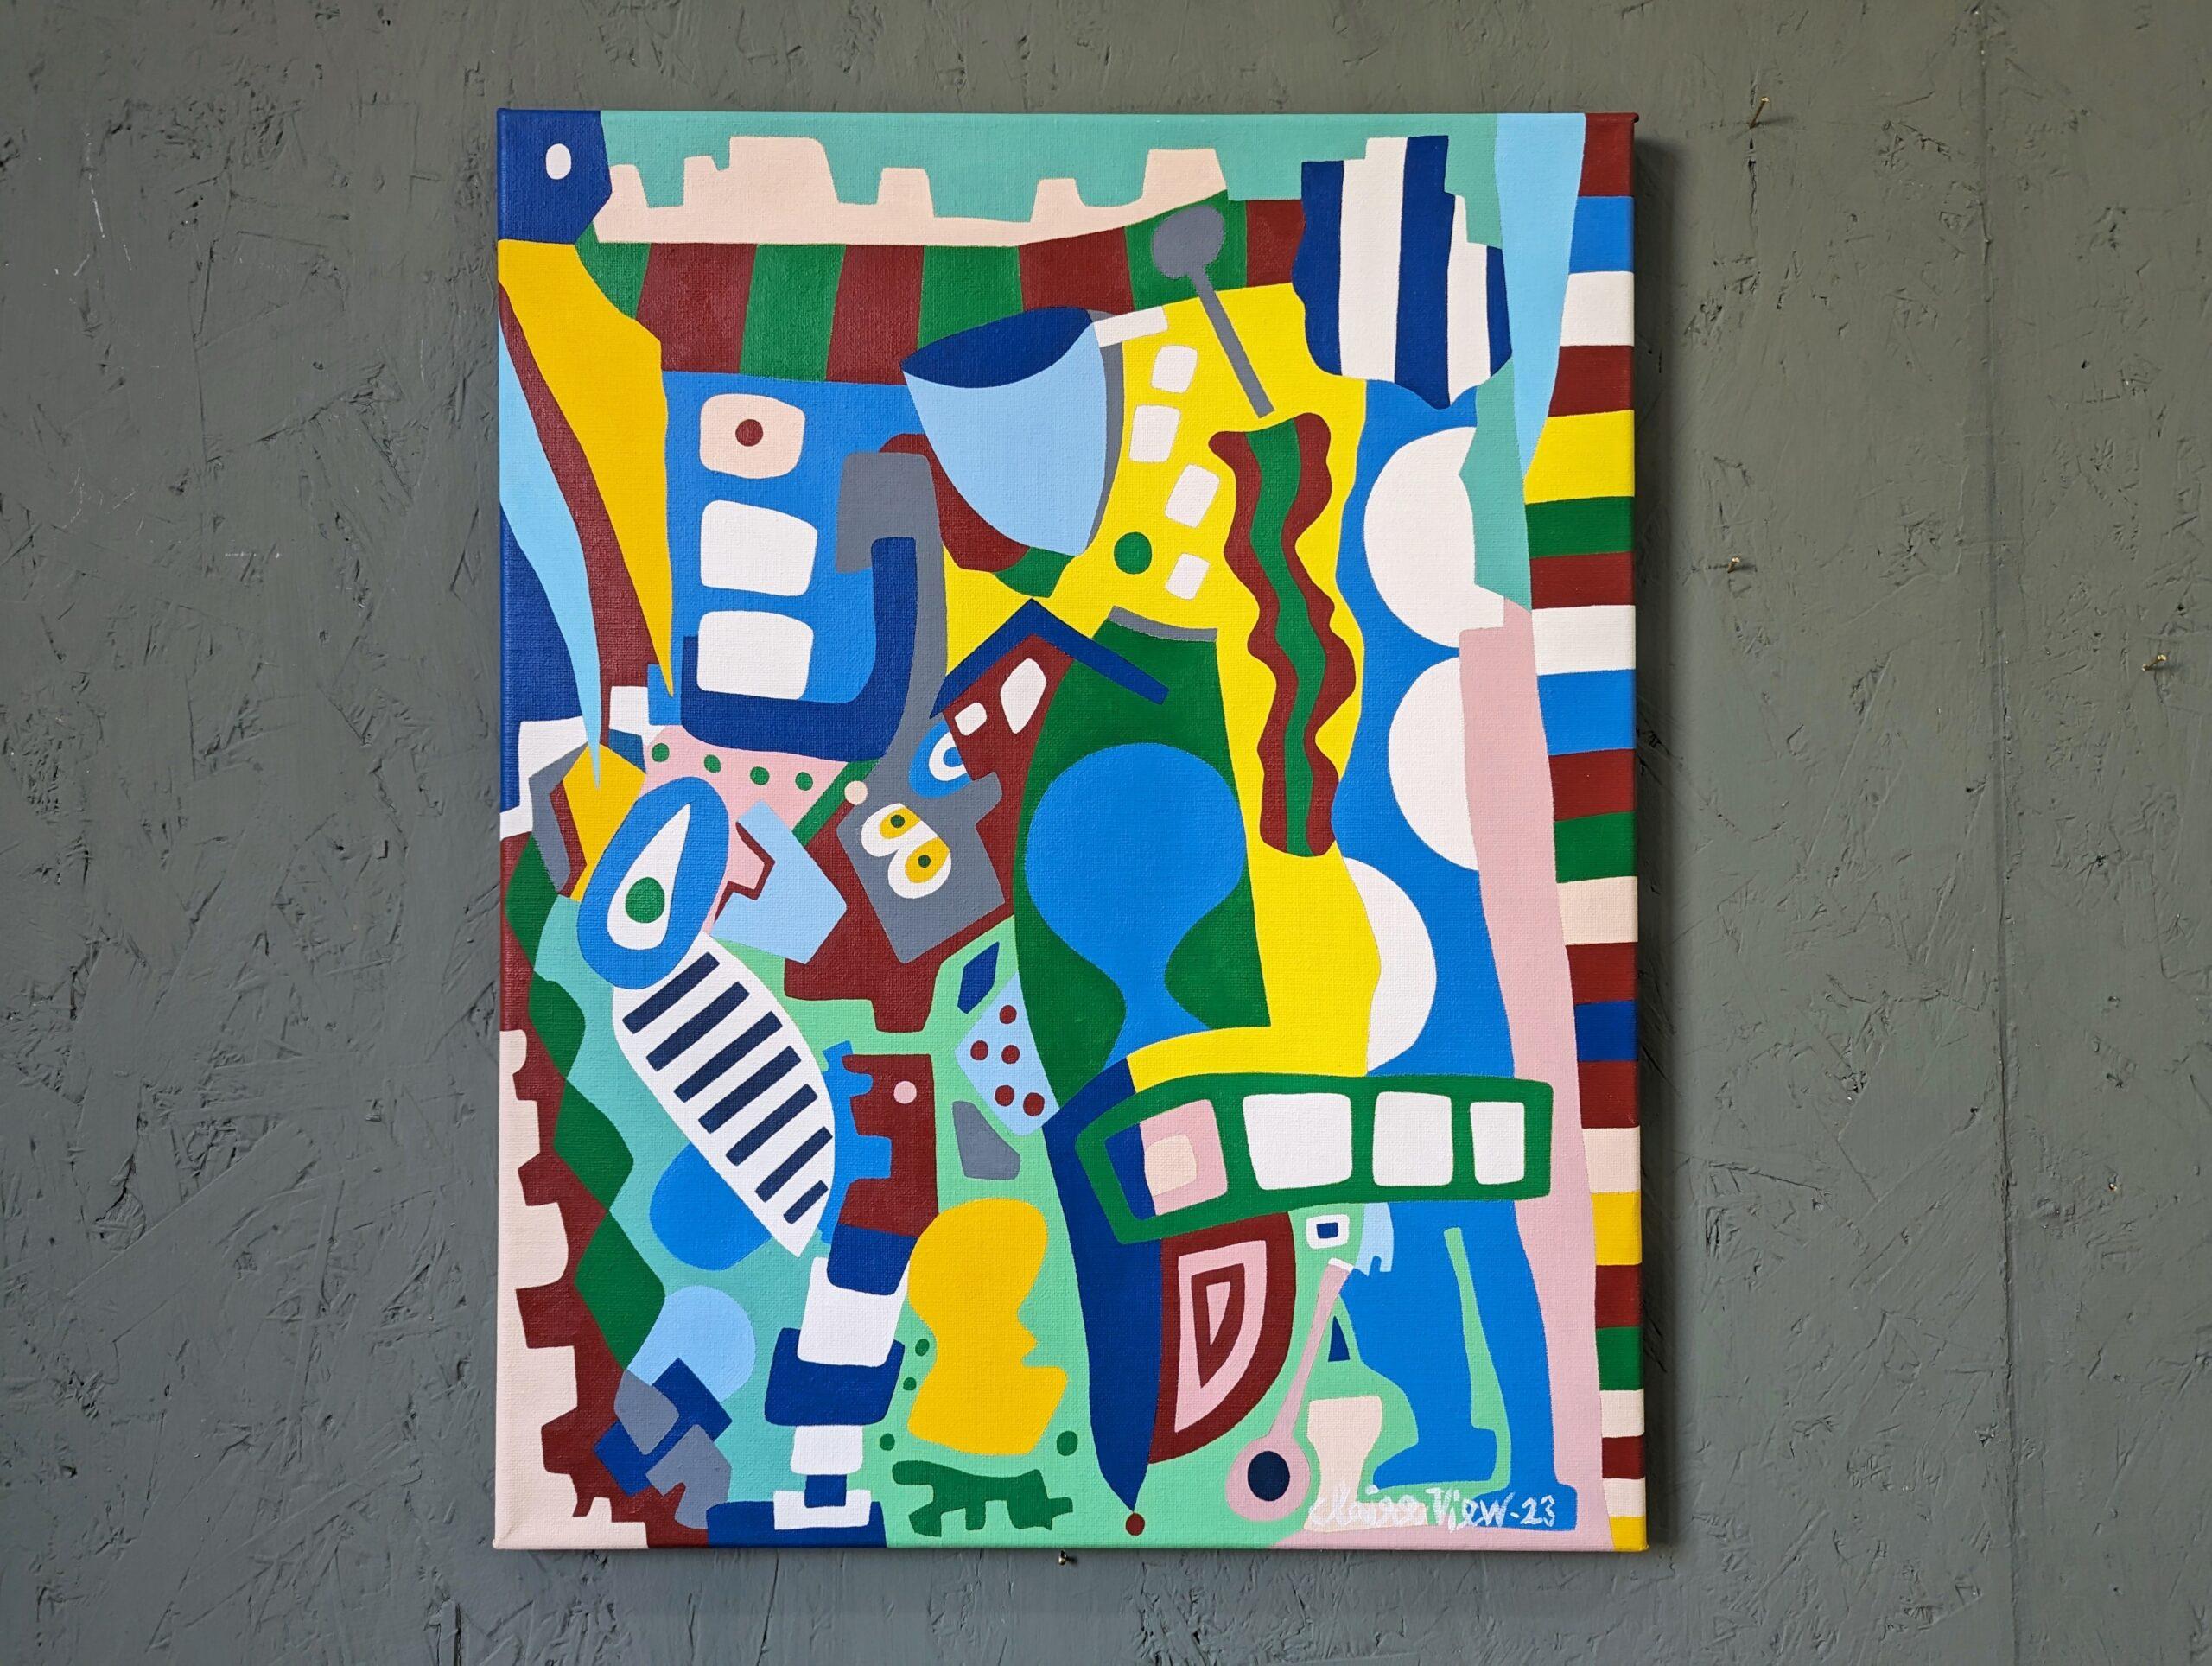 TIGRE BLEU
Taille : 50 x 40 cm (cadre compris)
Acrylique sur toile

Une peinture abstraite géométrique contemporaine audacieuse et dynamique, exécutée à l'acrylique sur toile et datée de 2023.

D'une composition visuellement frappante, le tableau